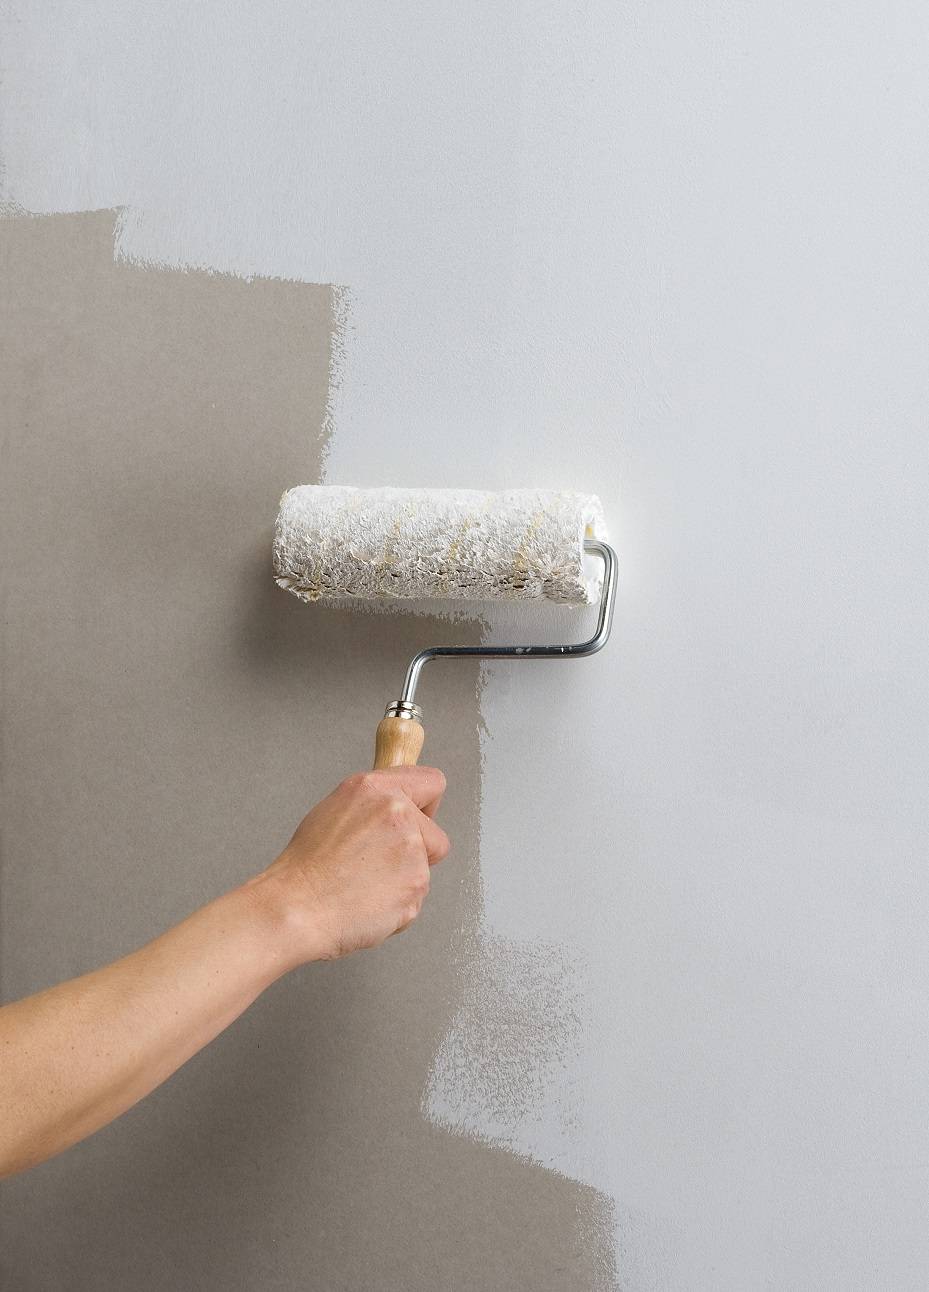 Надо ли грунтовать стены после шпаклевки | перед покраской